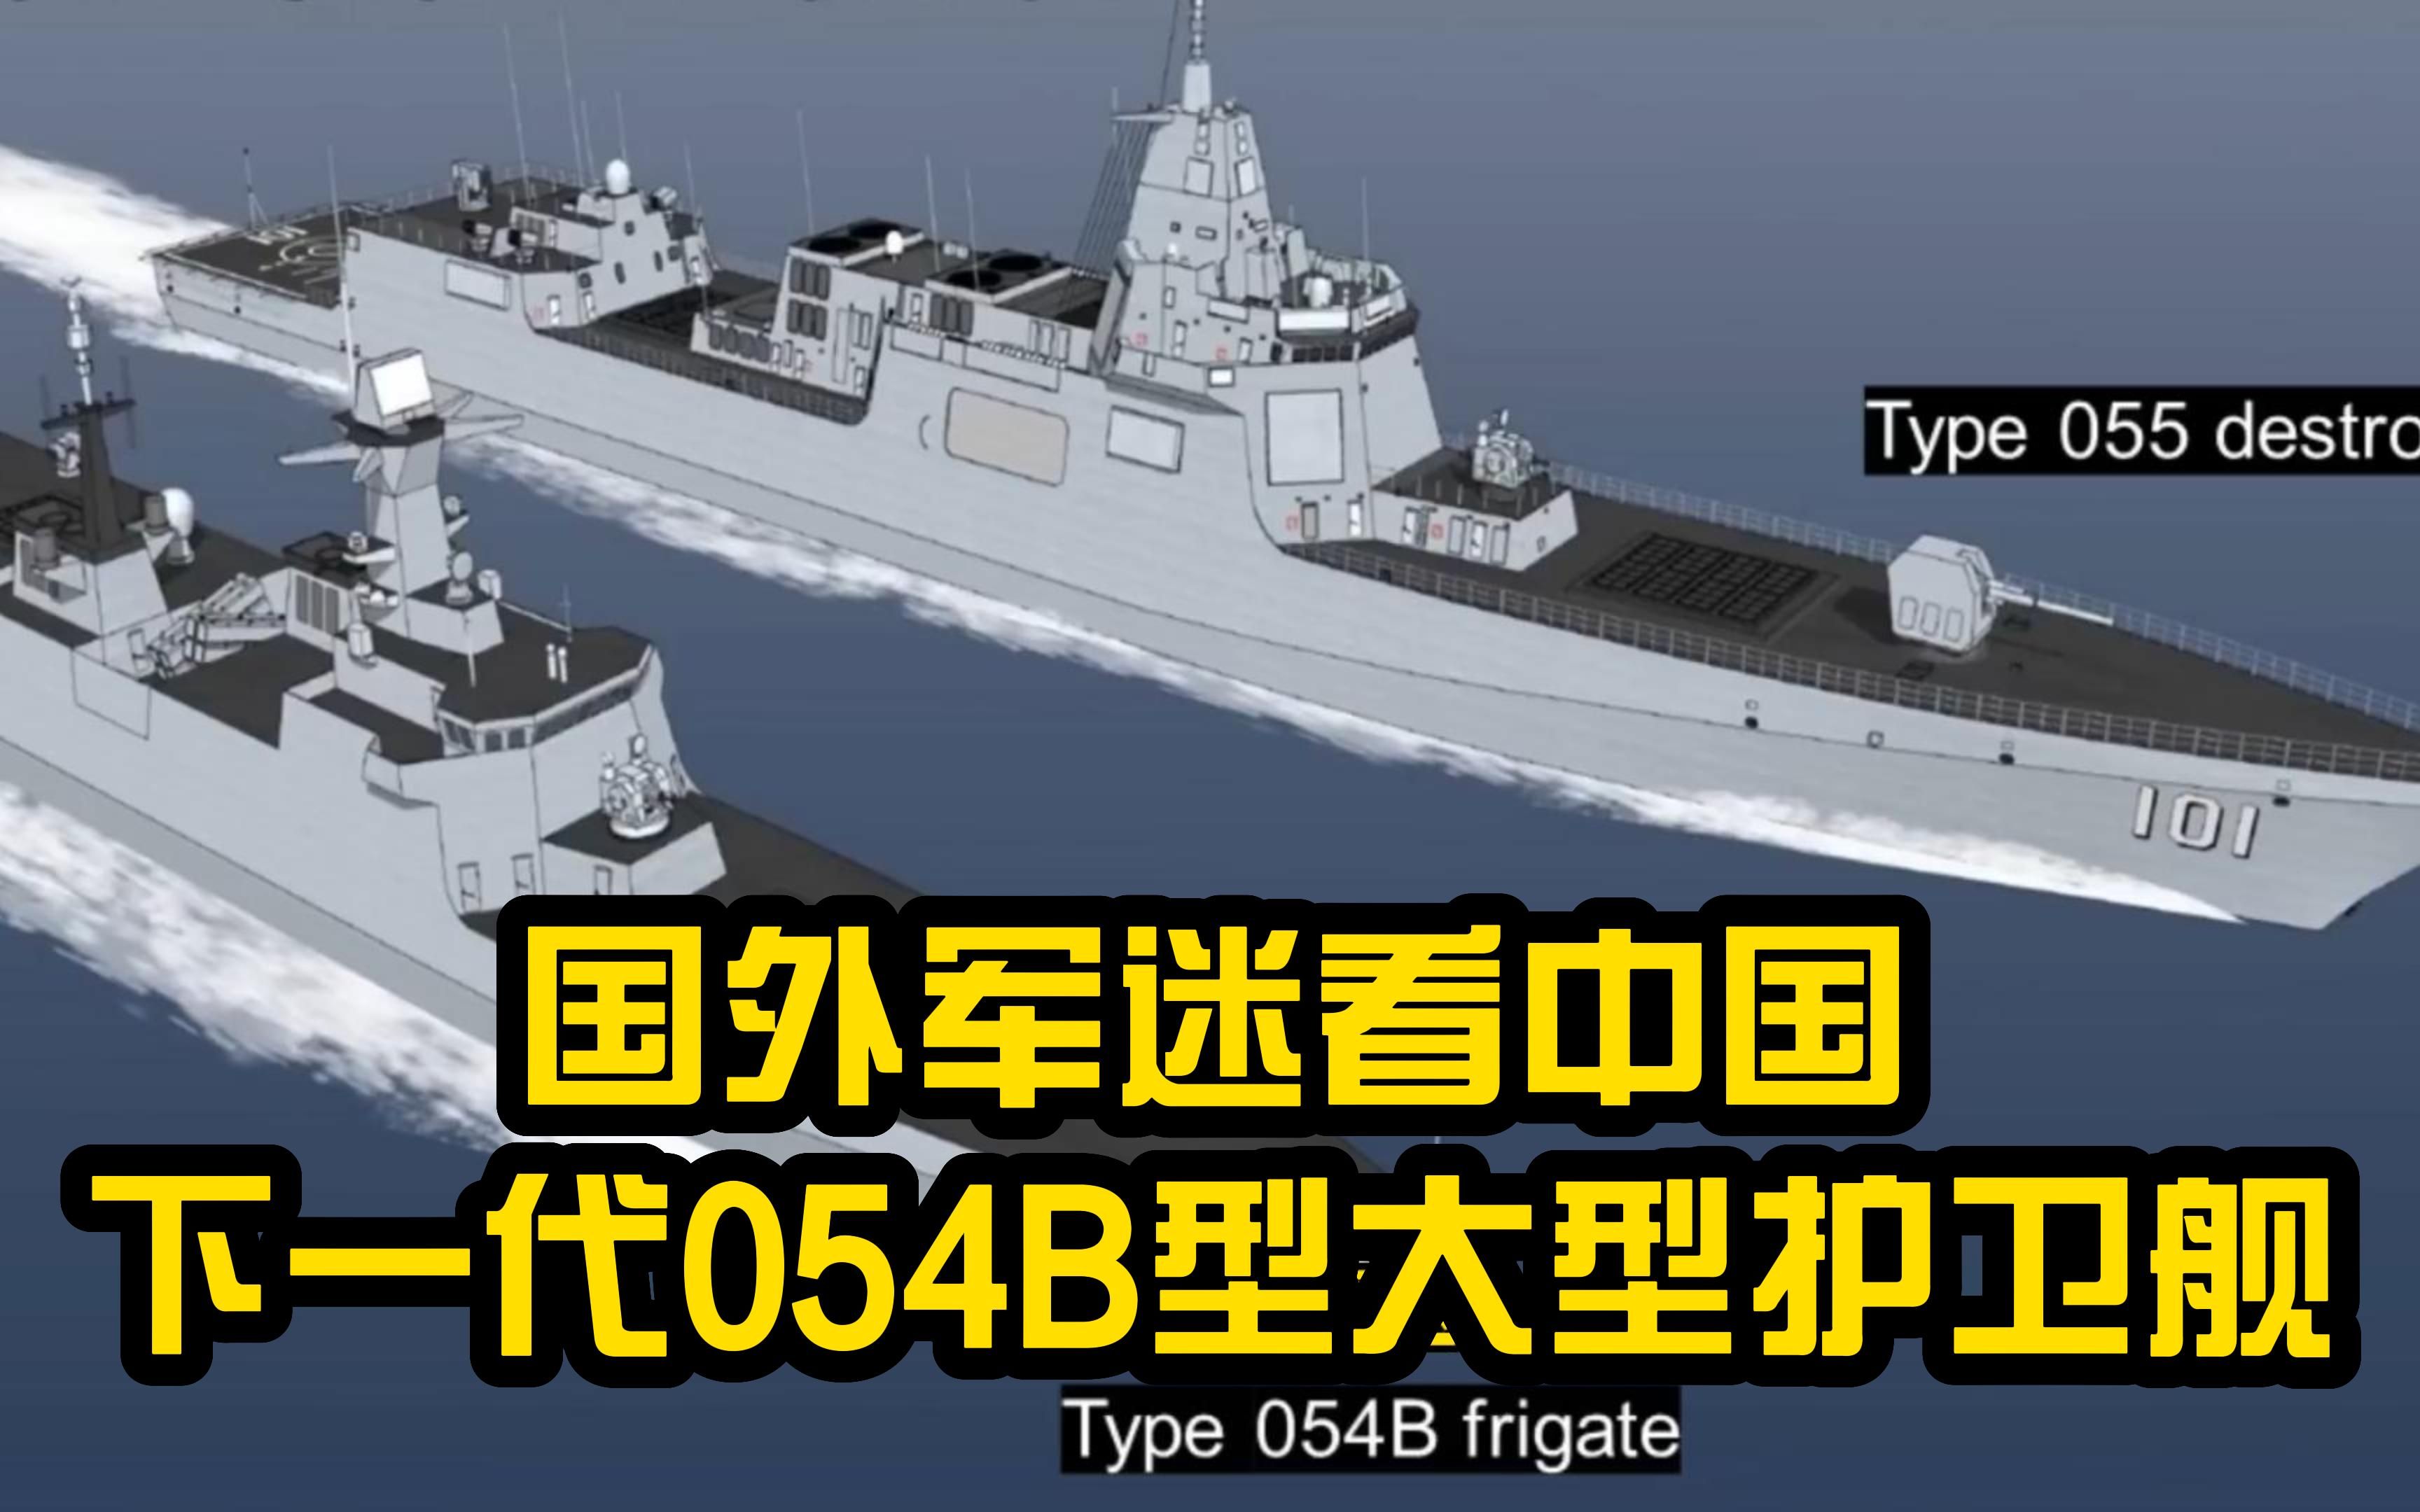 国外军迷看中国下一代054b型大型护卫舰,称其是青春版055